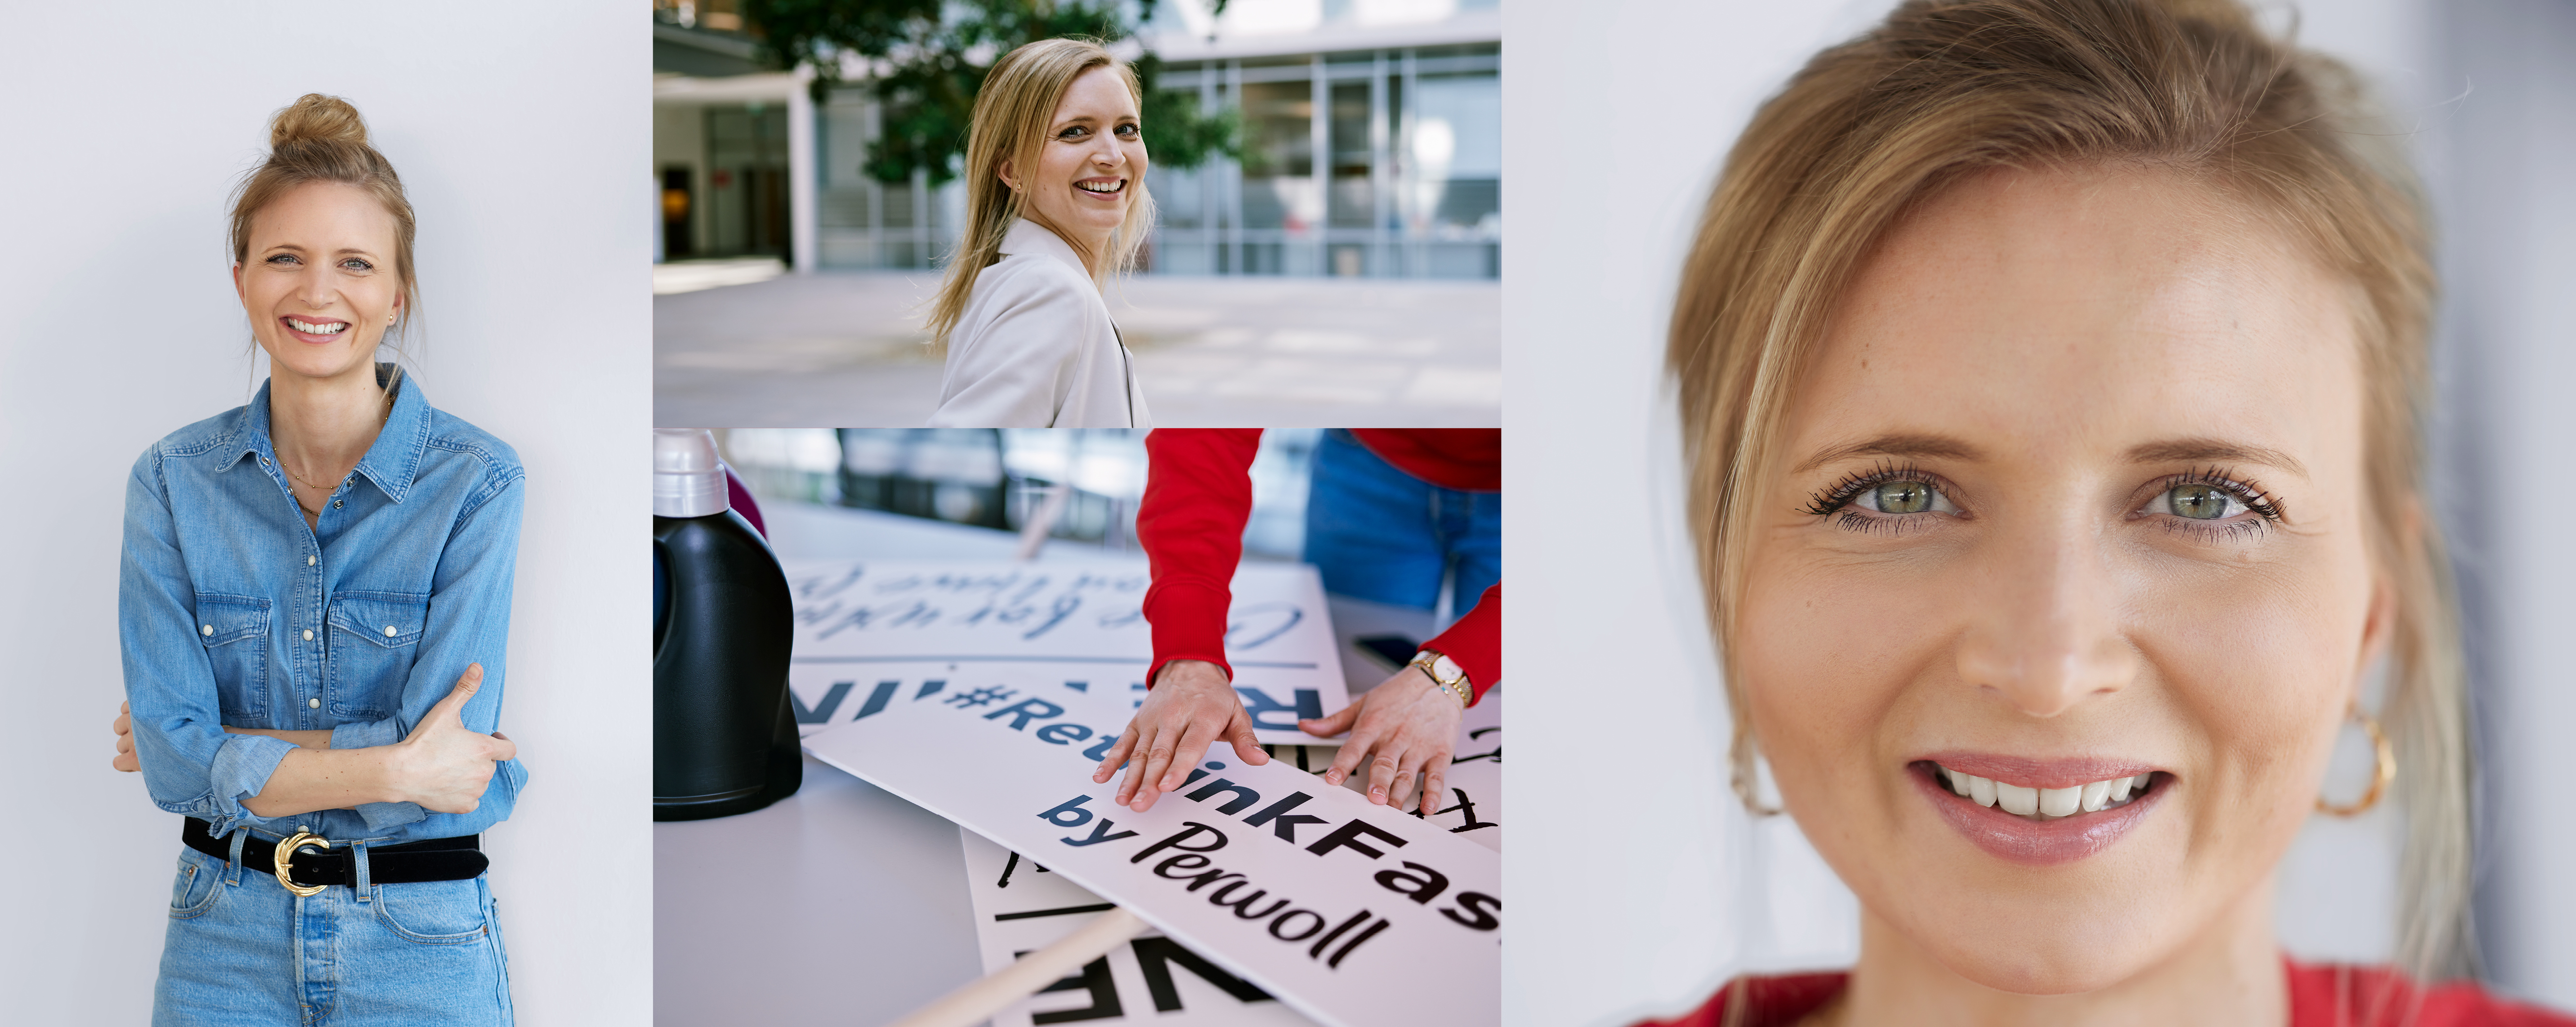 Zaposlenica Henkela ispred svog radnog mesta. Ona pozira pred kamerom, sortira znakove iz Persilove kampanje #Rethink Fashion i smije se. 